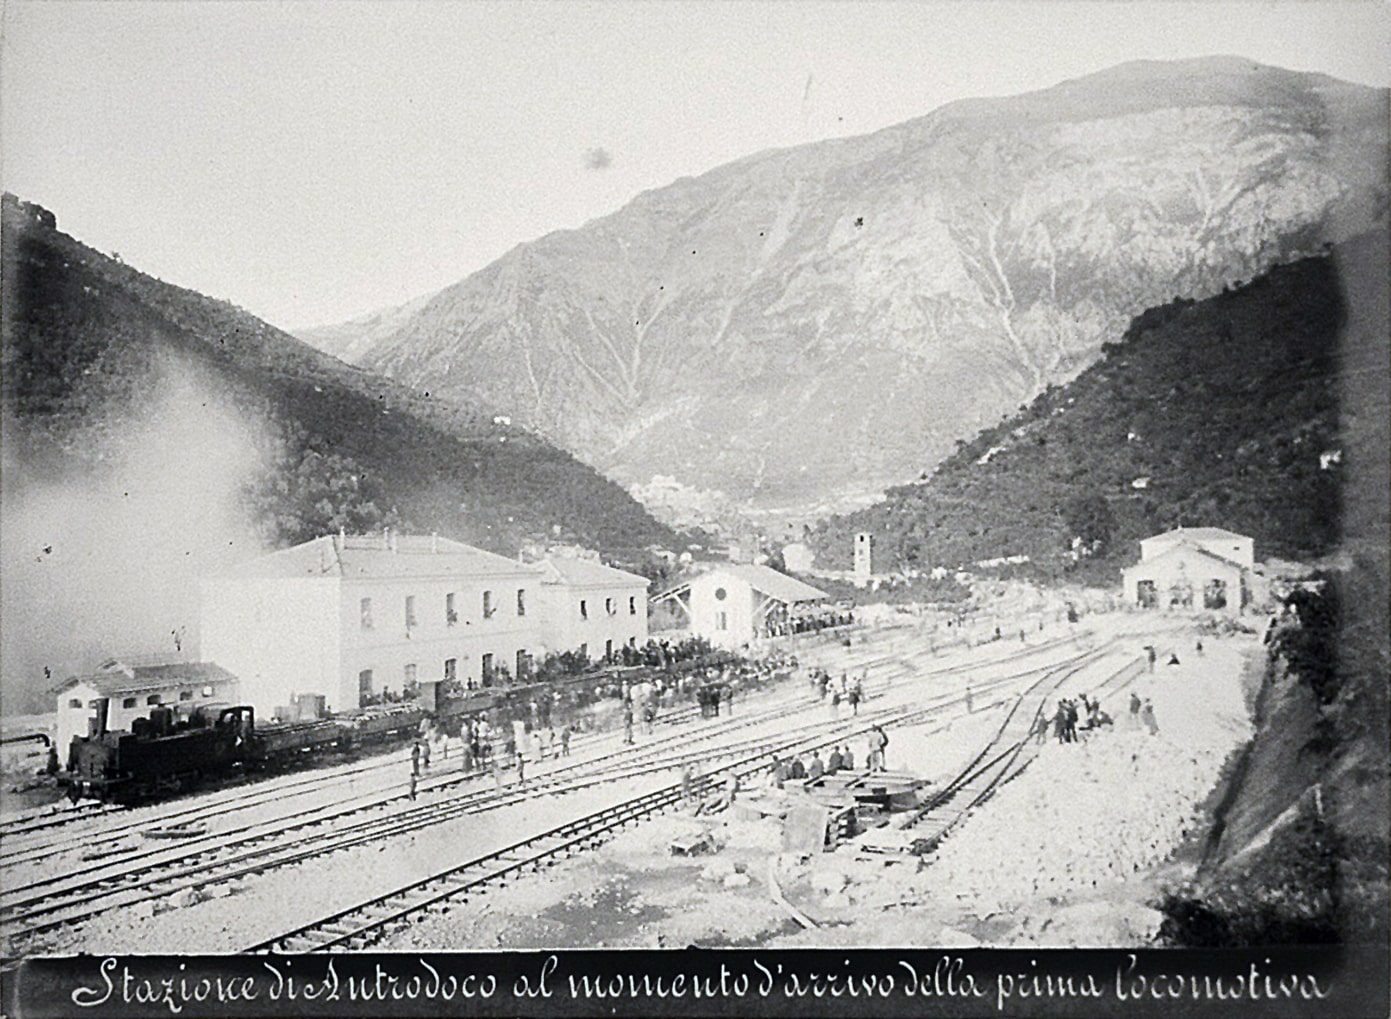 https://commons.wikimedia.org/wiki/File:Ferrovia_Terni-Rieti-L%27Aquila_(1883)_-_13_-_Arrivo_della_prima_locomotiva_ad_Antrodoco.jpg